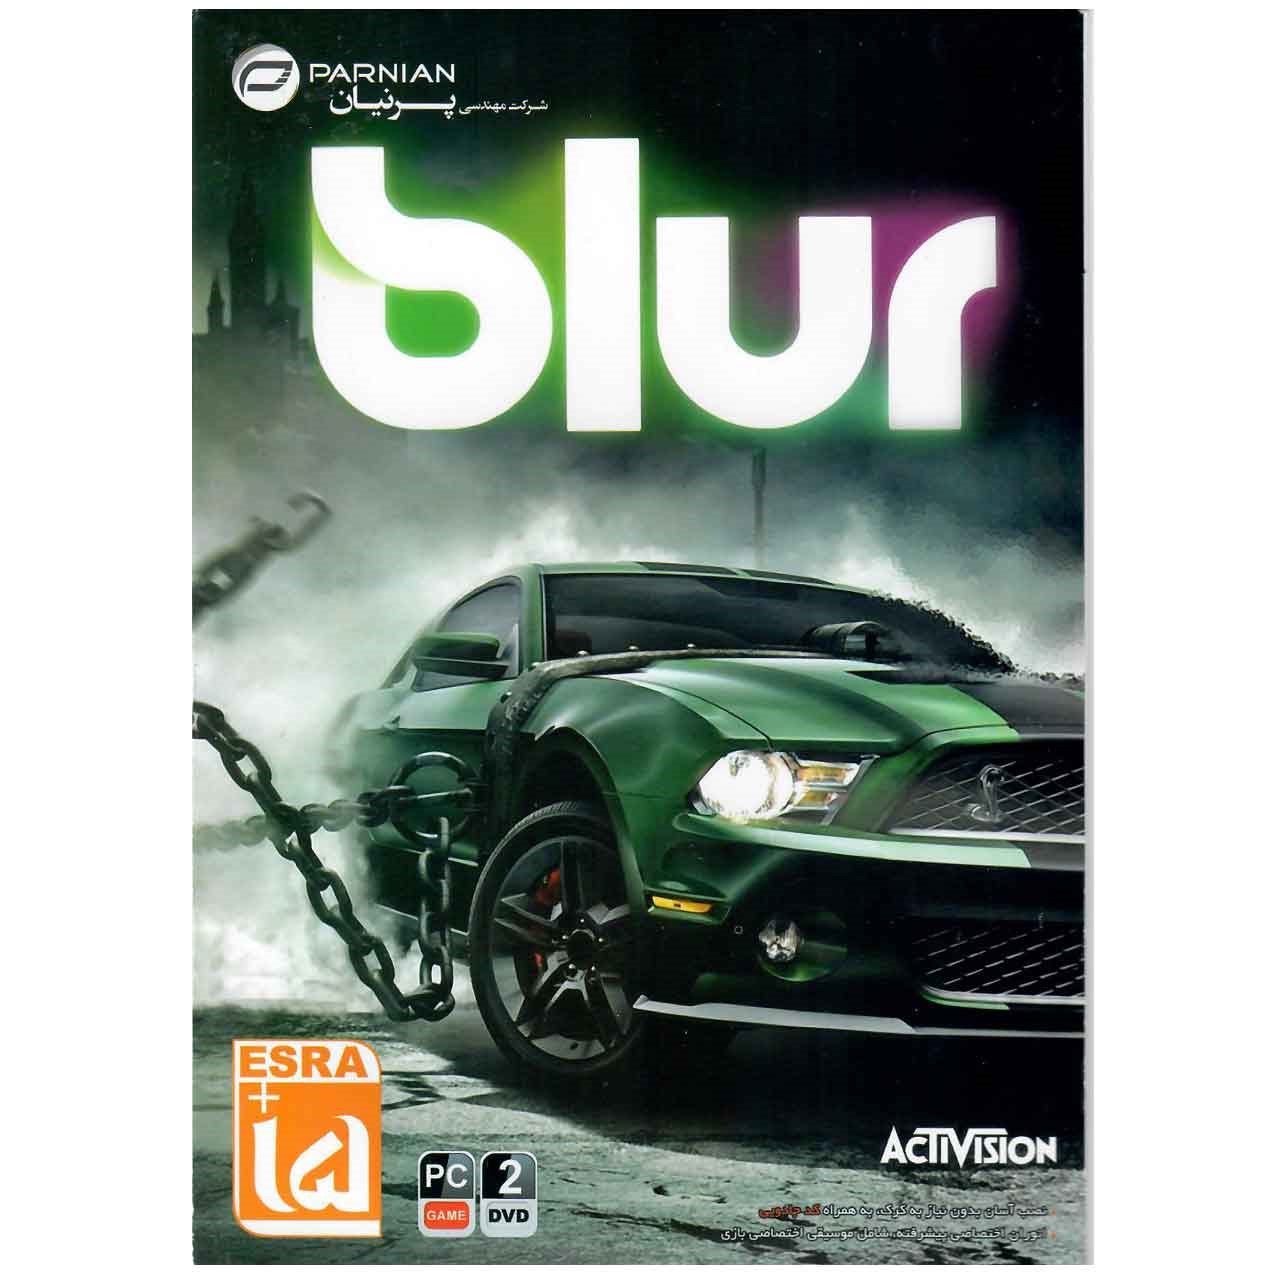 بازي كامپيوتري Blur مخصوص PC